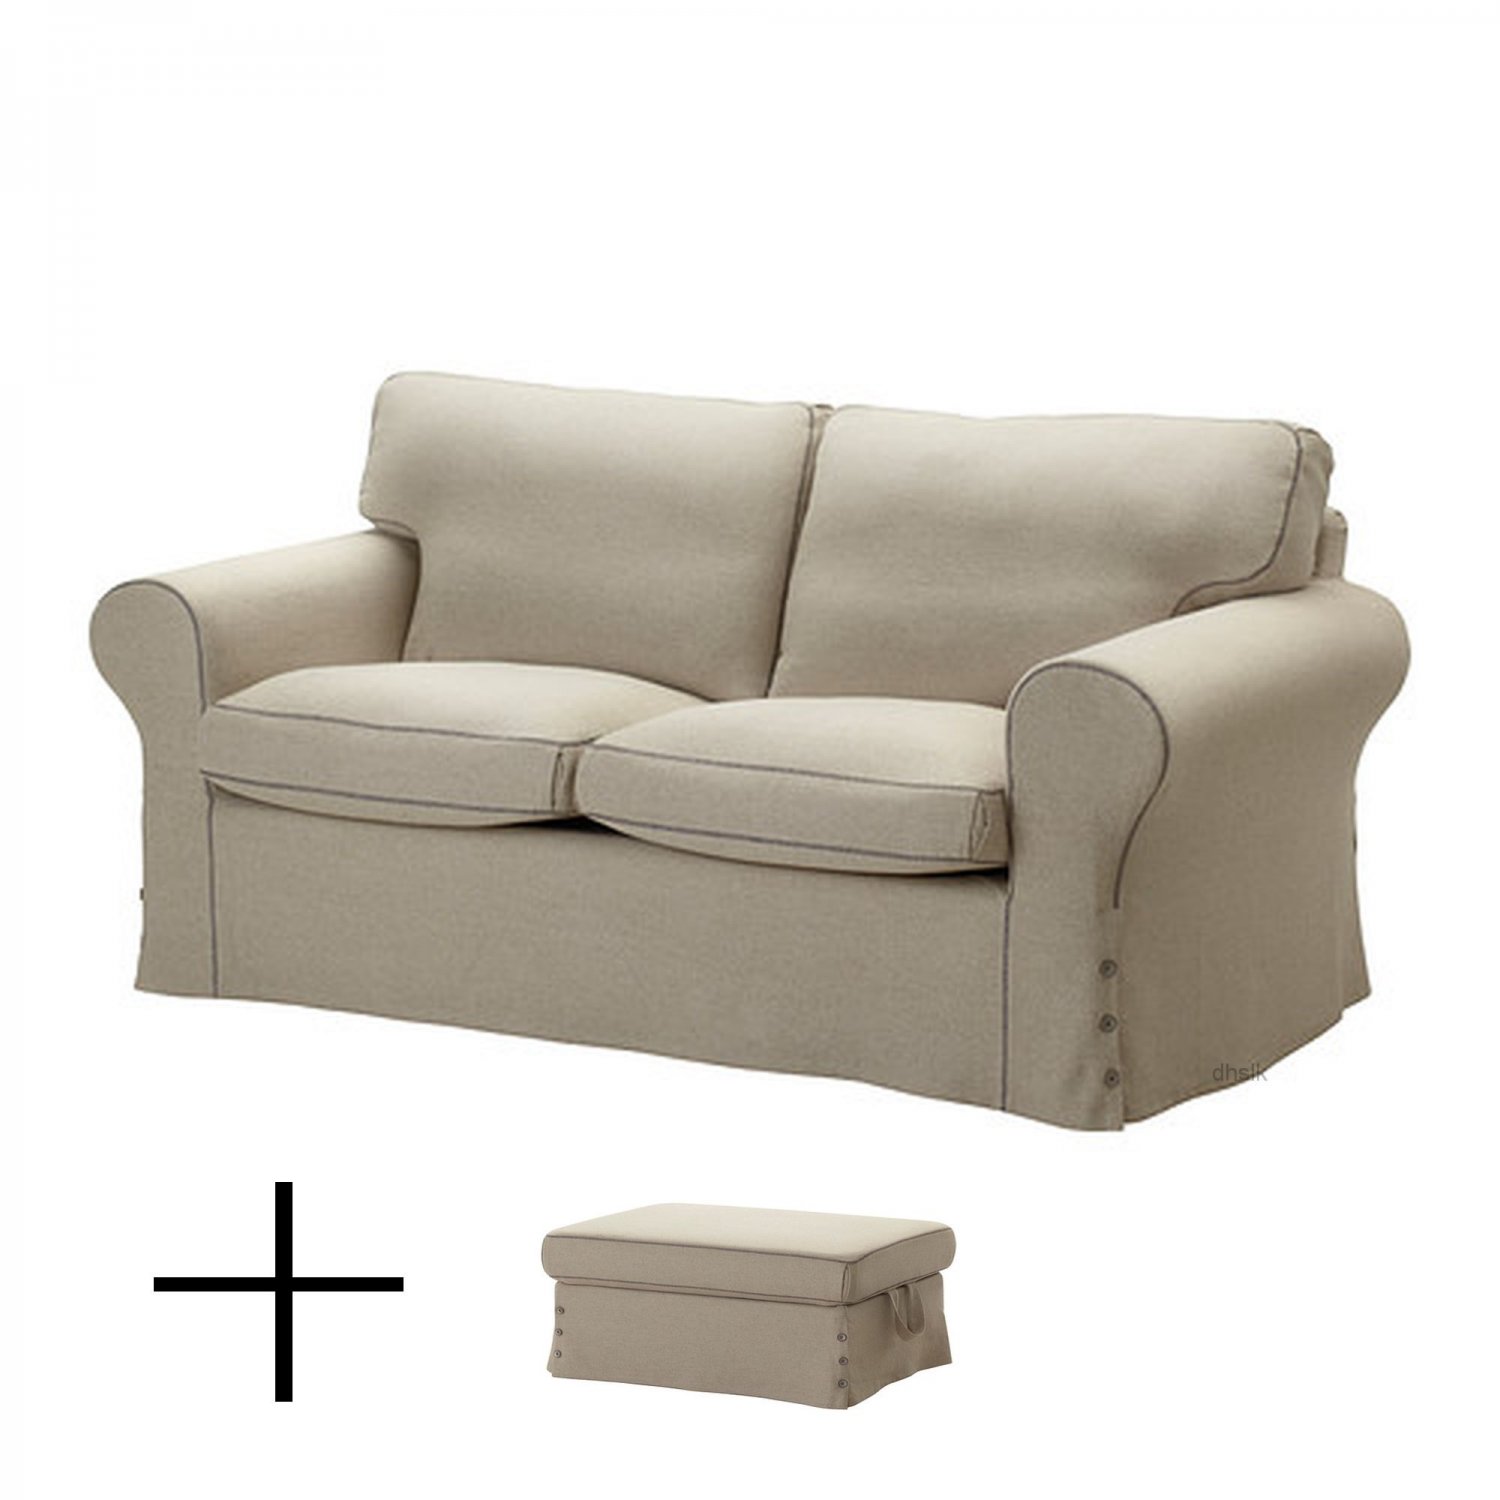 IKEA EKTORP 2 Seat Sofa and Footstool SLIPCOVERS Loveseat ...